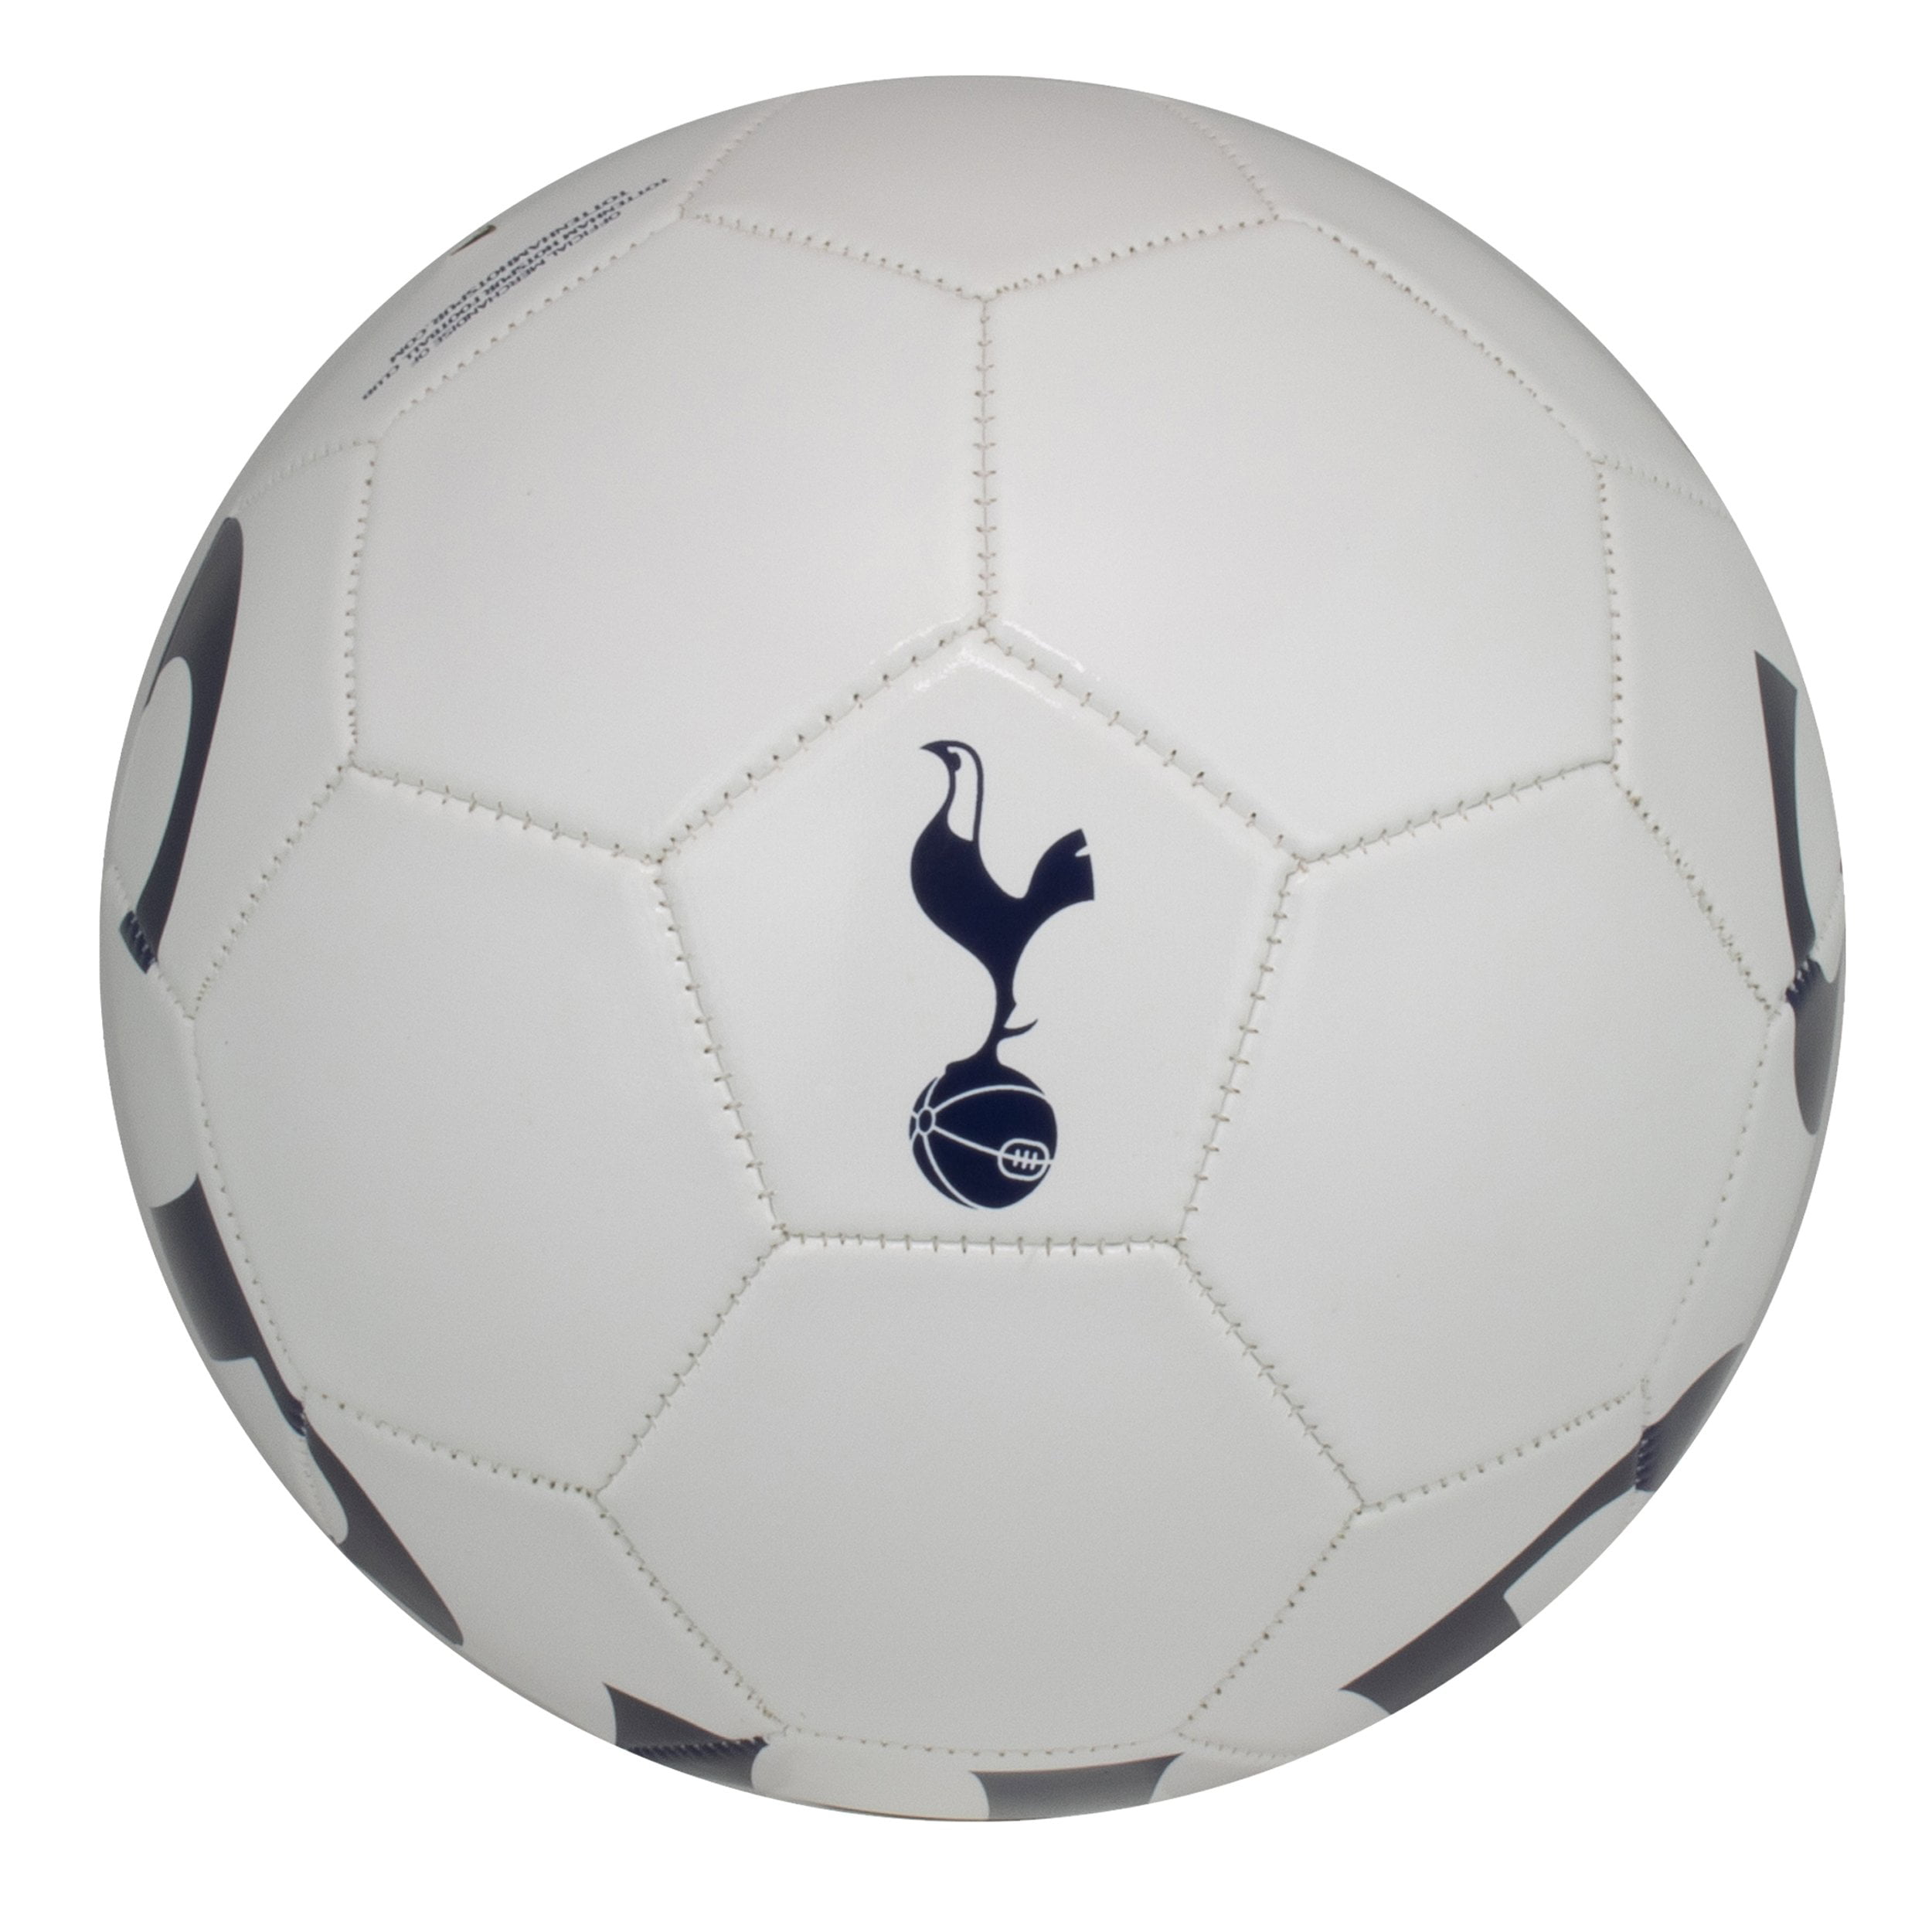 Tottenham Hotspur Soccer Ball Official Tottenham Ball #5 Size 5 